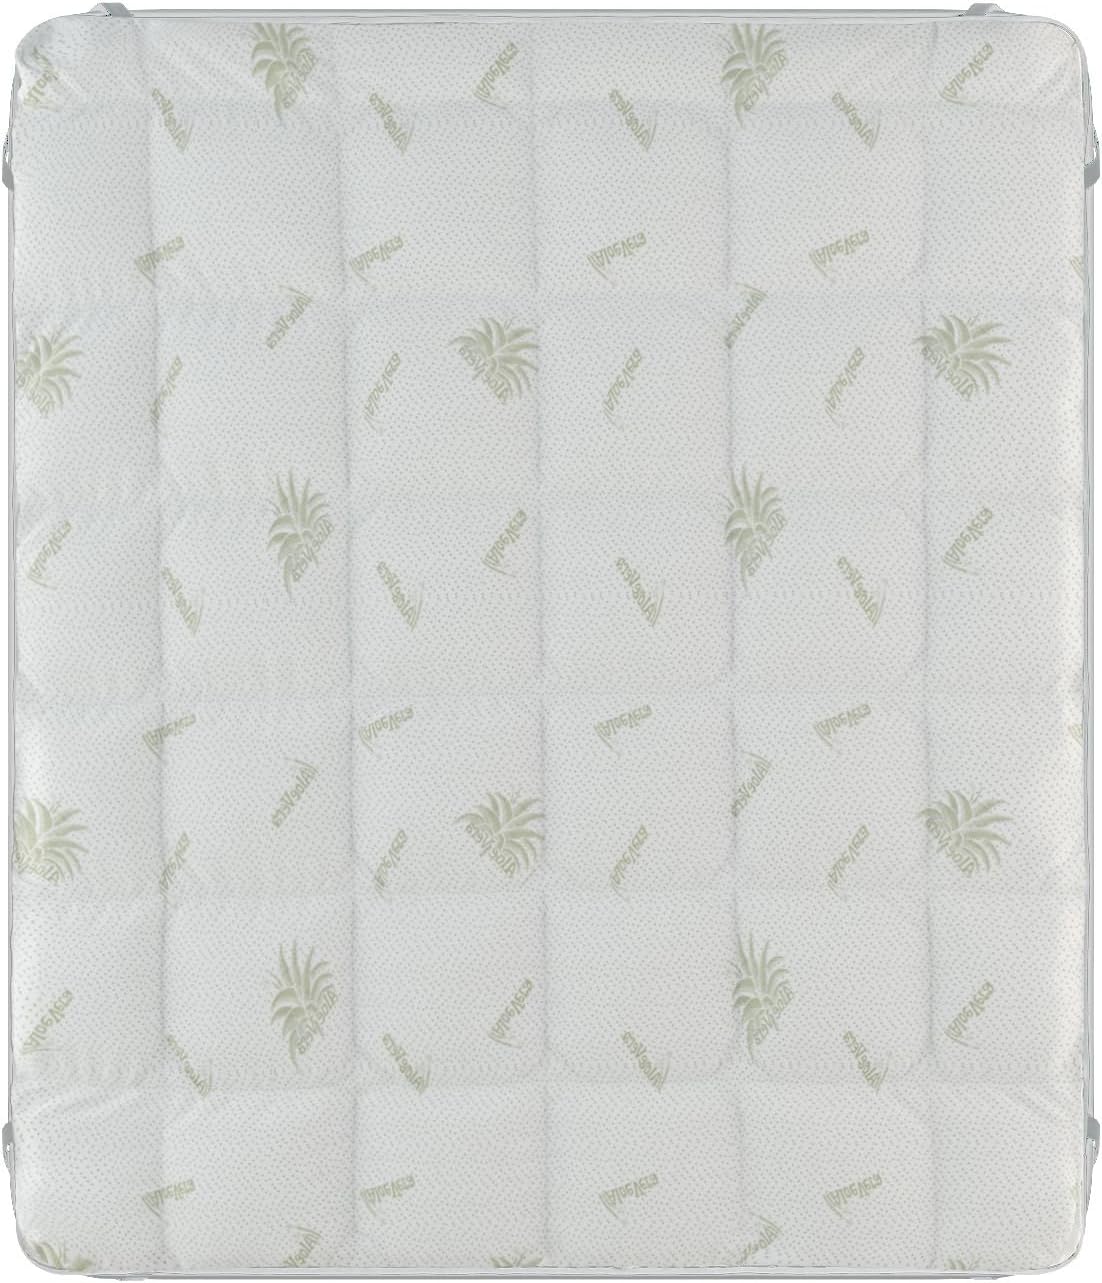 Elegante weiße gesteppte Matratzenauflage – verschiedene Größen